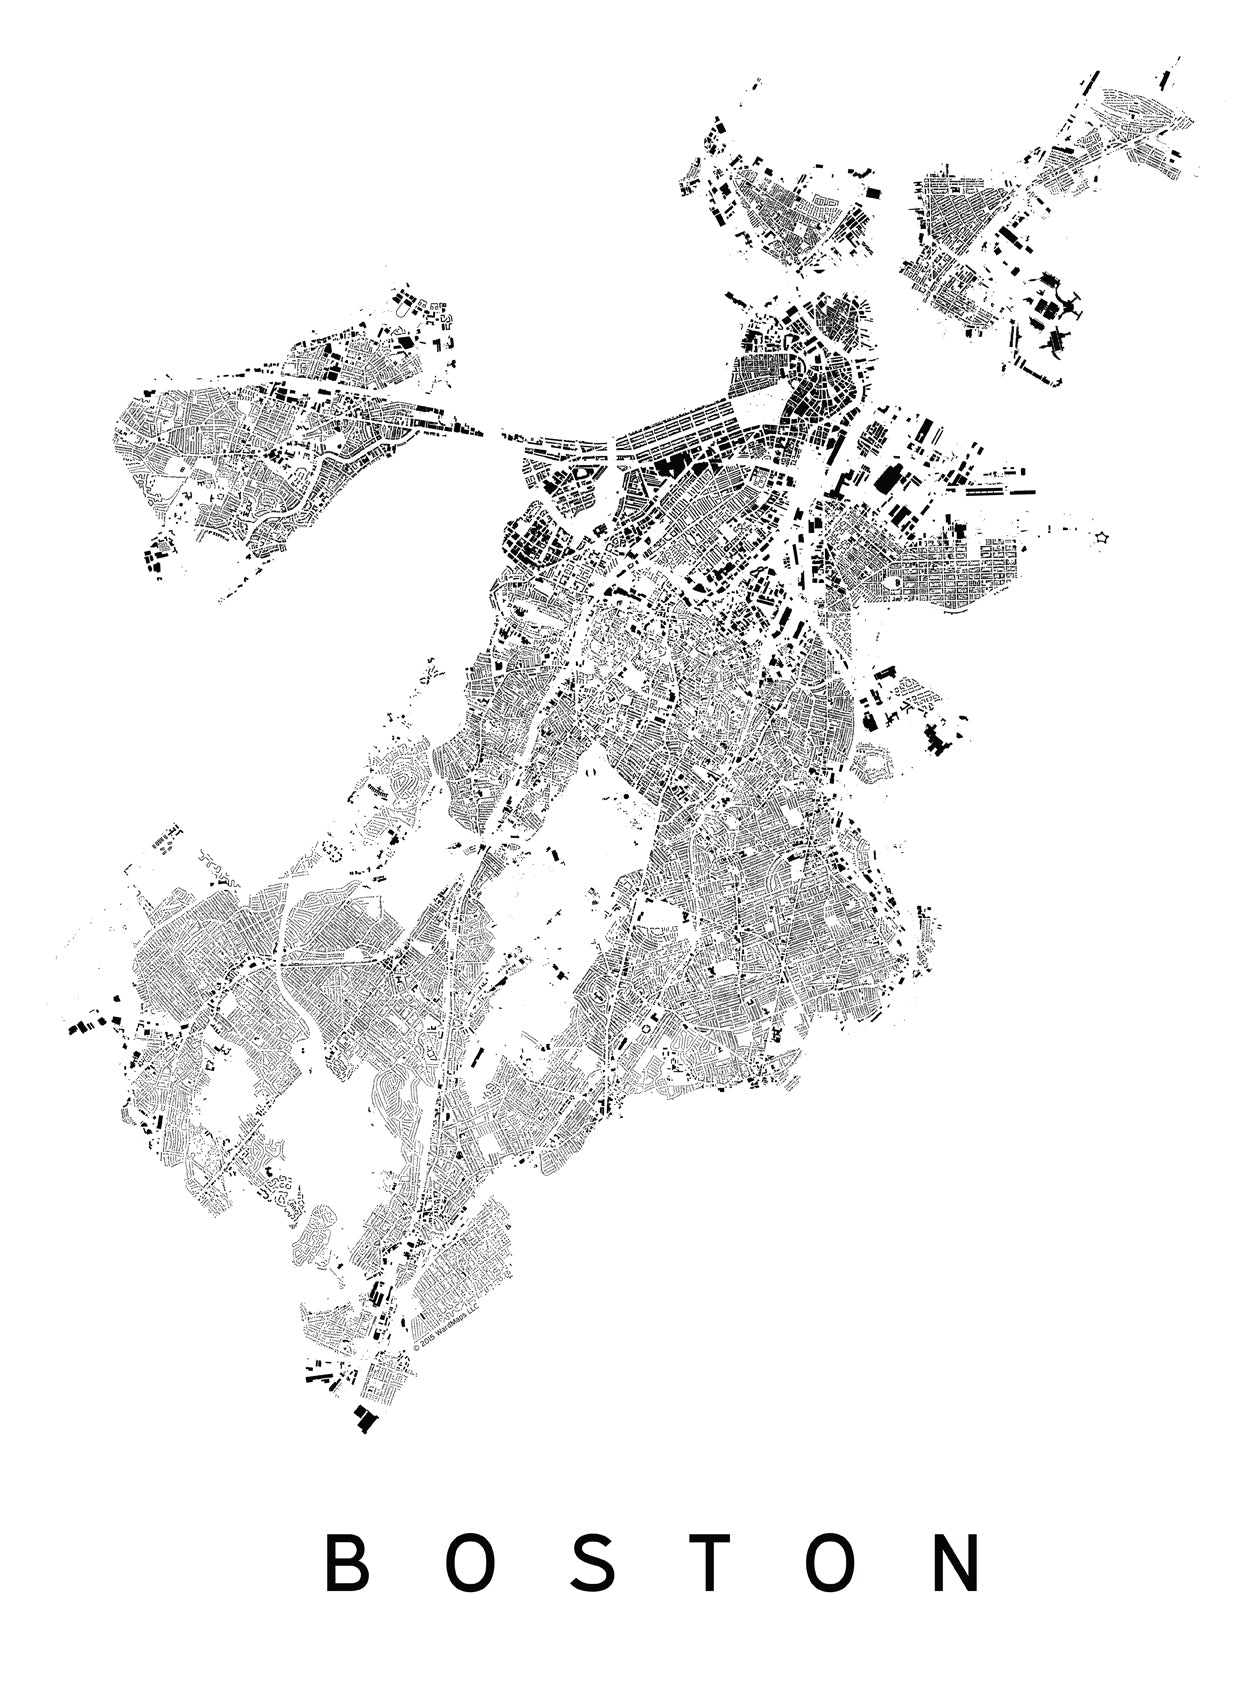 Boston City Plan Print